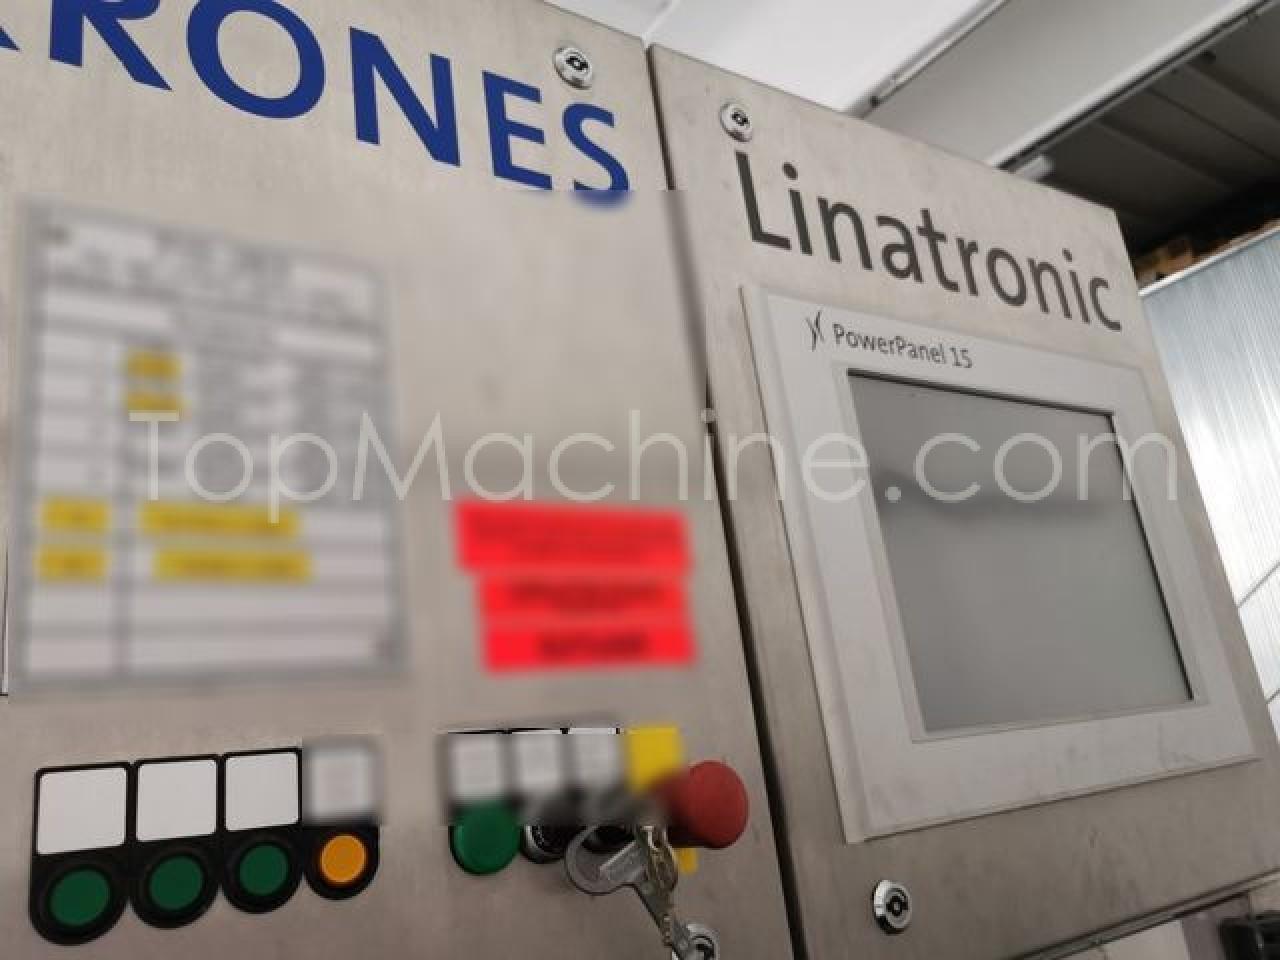 Used Krones Linatronic Bebidas y Líquidos Misceláneo